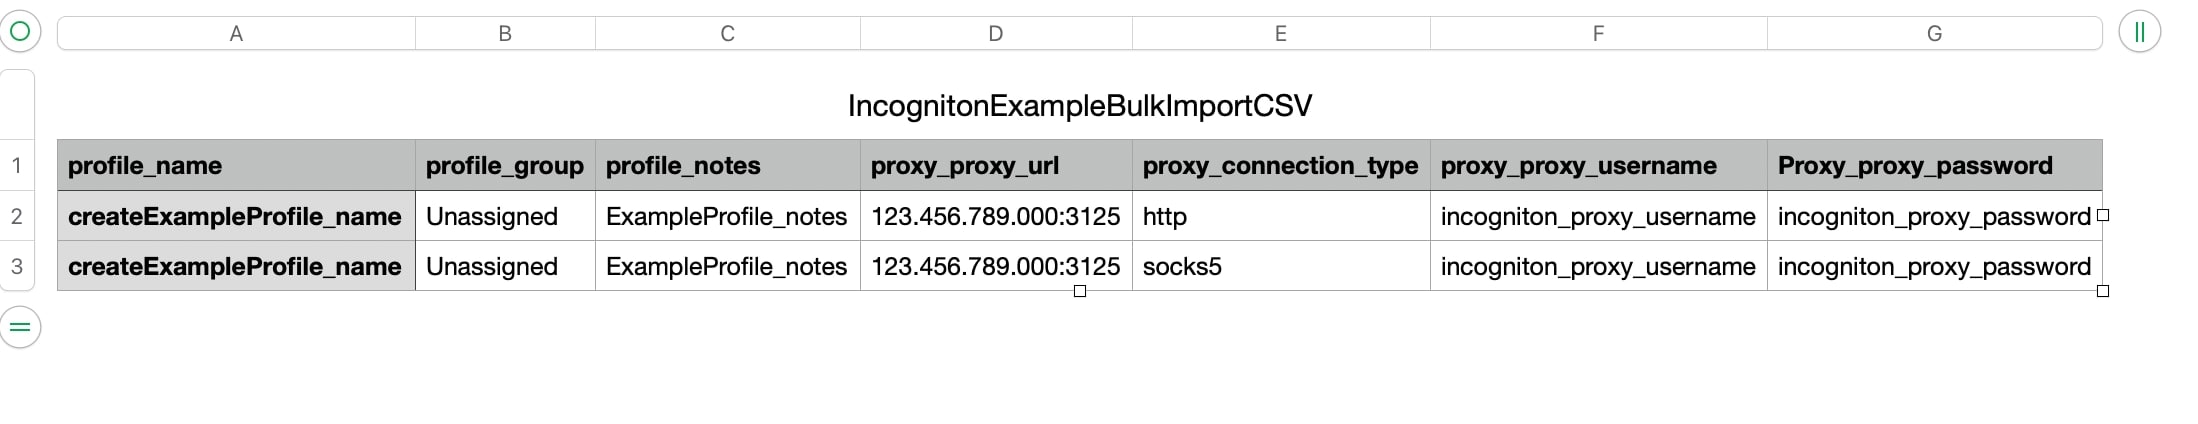 Creando perfiles de navegador en Incogniton en masa con la plantilla en formato CSV